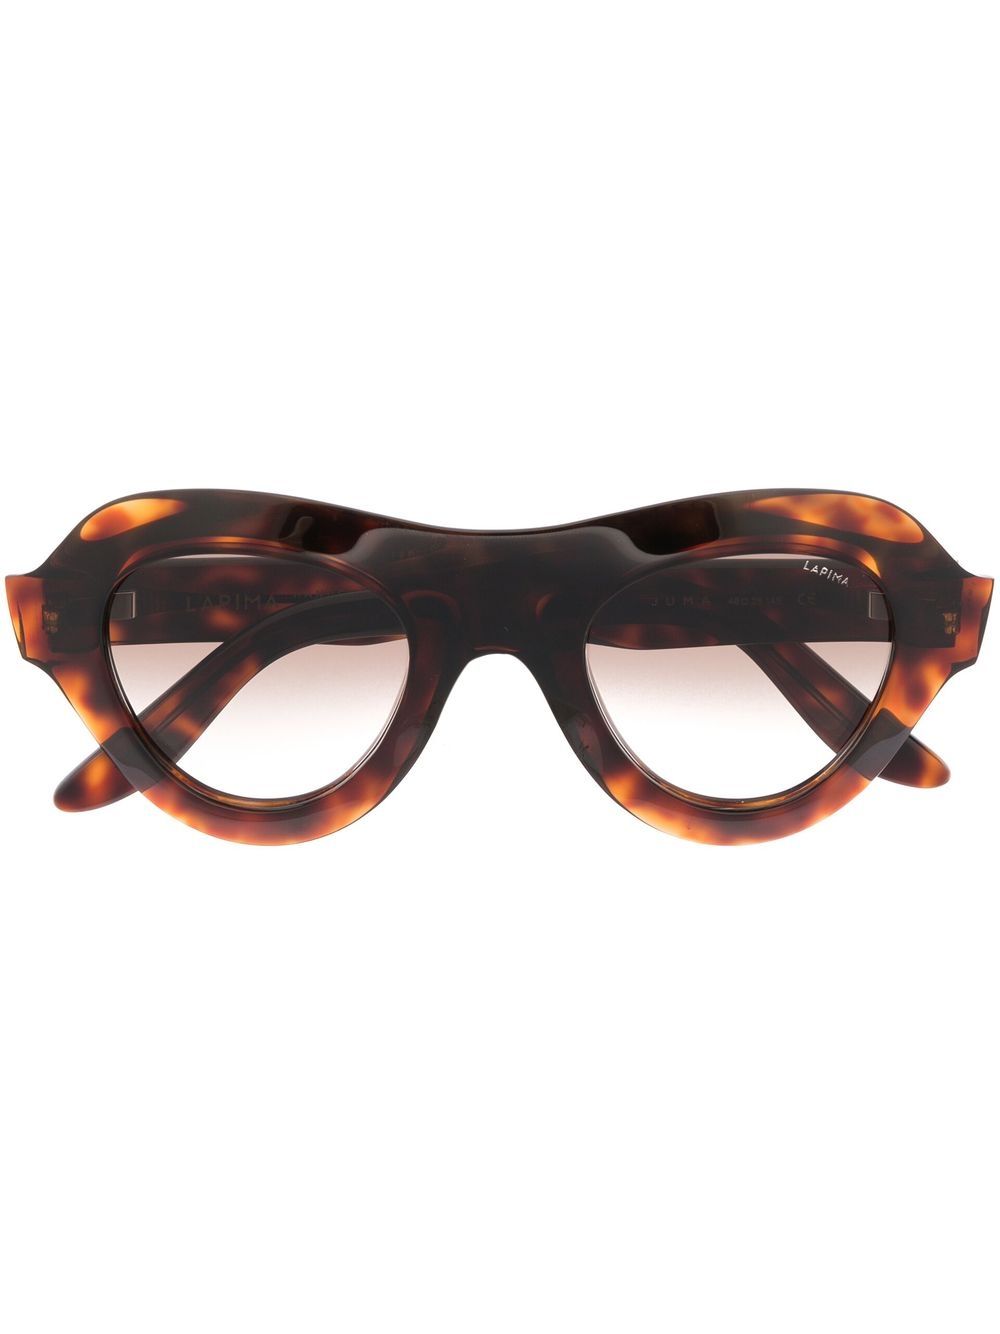 Lapima round tinted sunglasses - Brown von Lapima